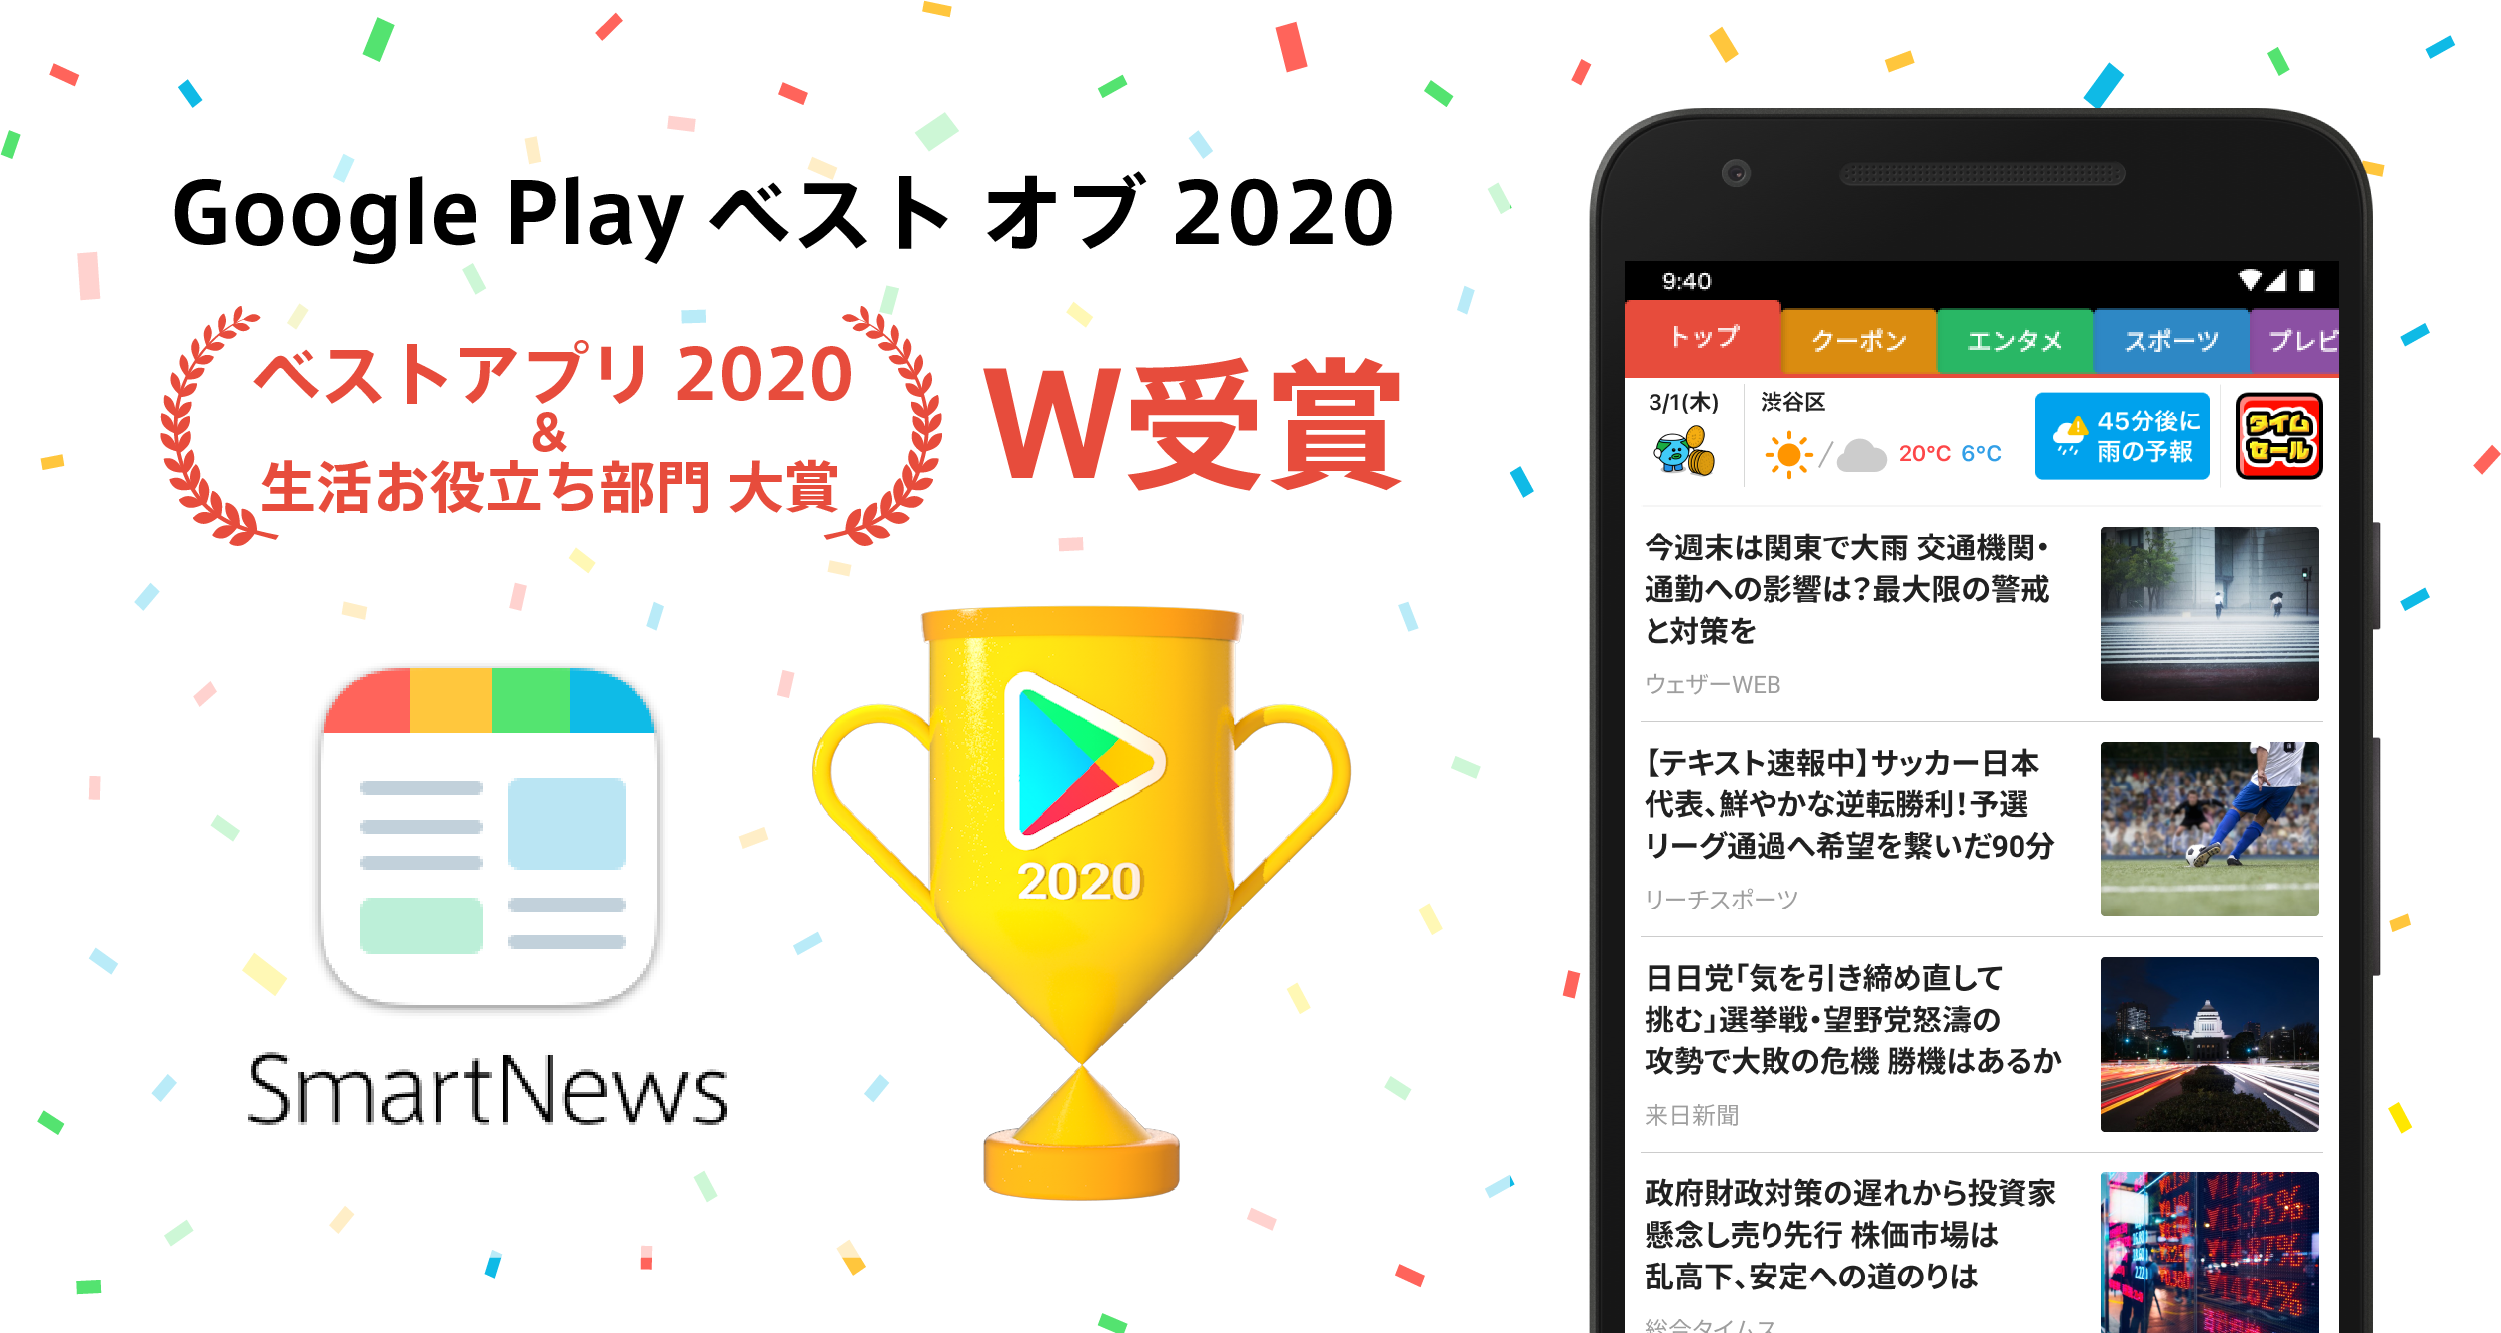 ニュースアプリ Smartnews Google Play ベスト オブ ベストアプリ と 生活お役立ち 部門 大賞を受賞 スマートニュース株式会社のプレスリリース